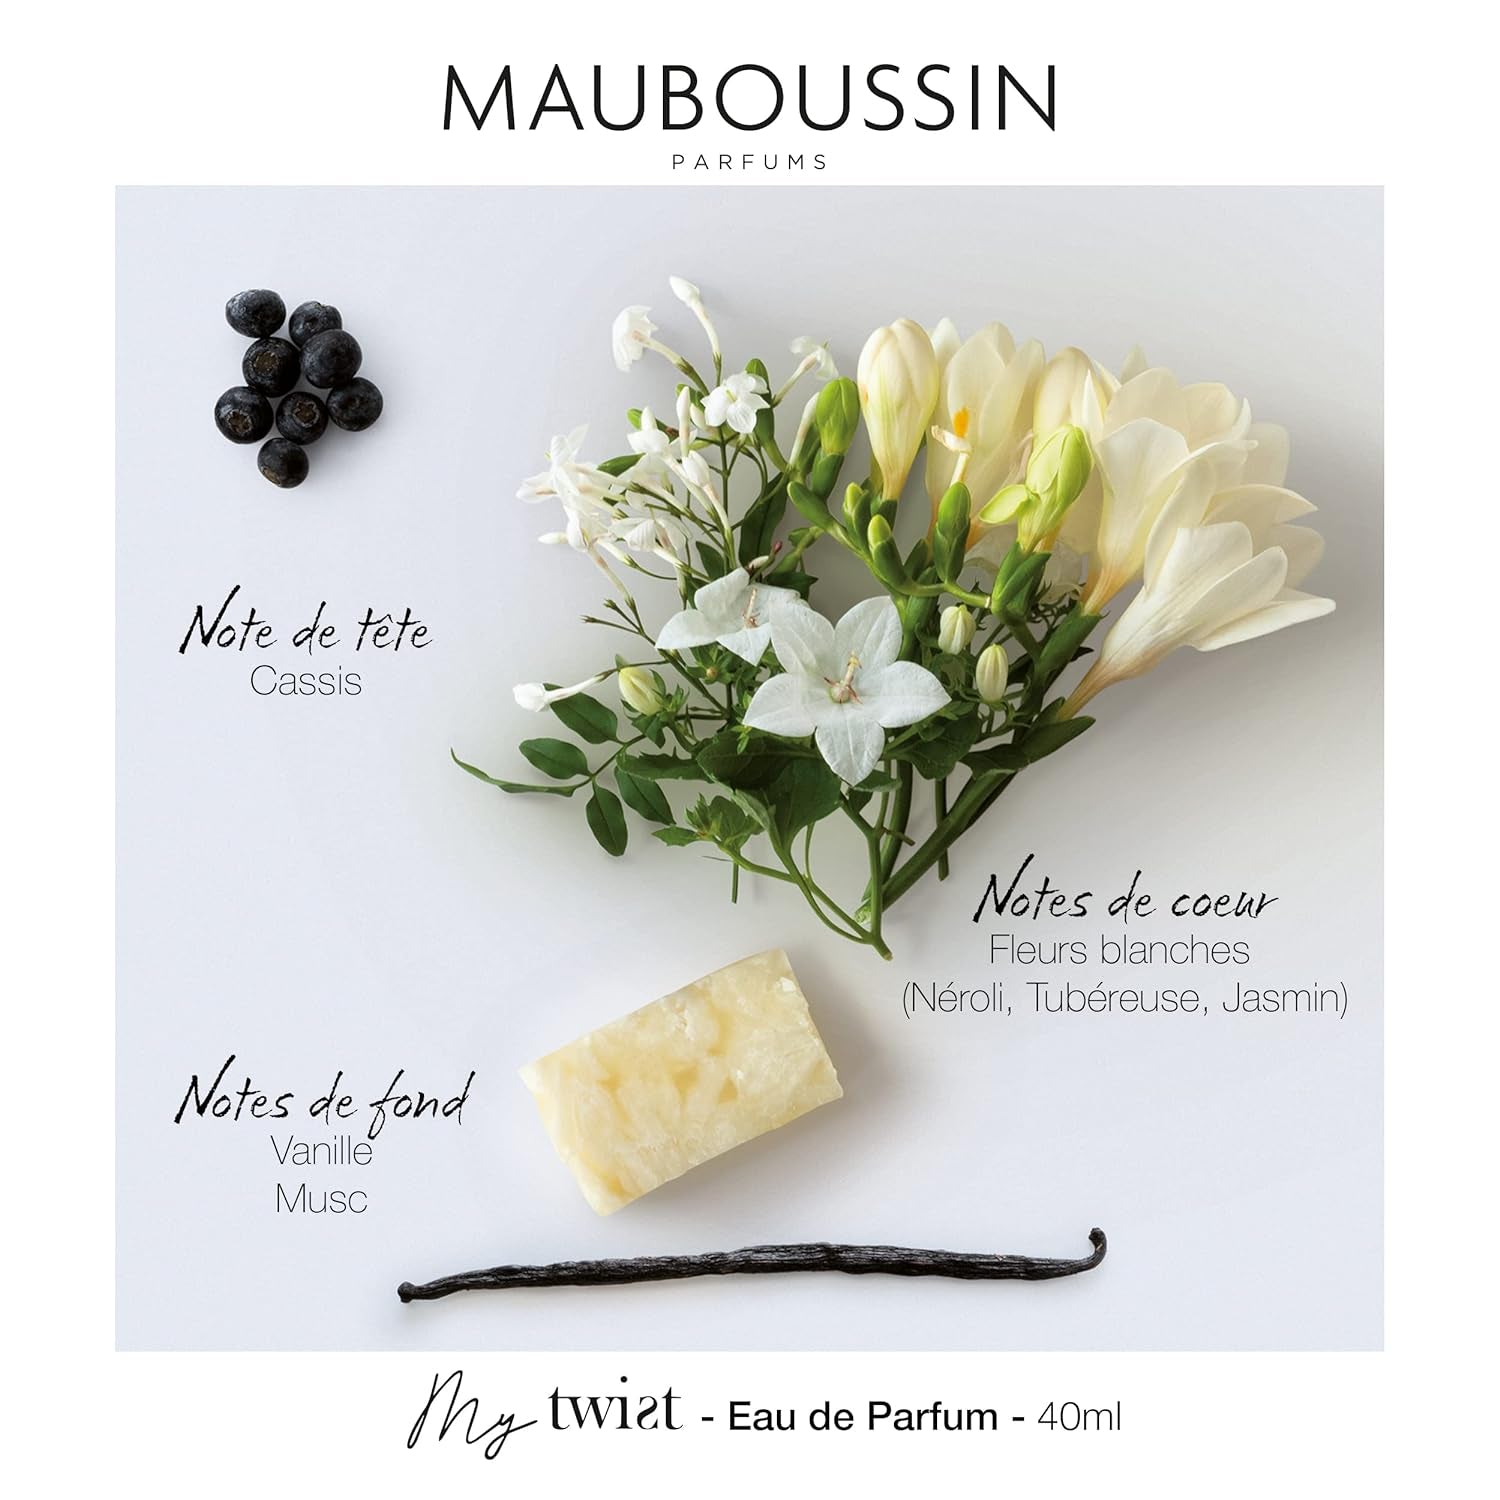 Mauboussin - My Twist 40ml (1.35 Fl Oz) - Eau de Parfum for Women - Floral Scent